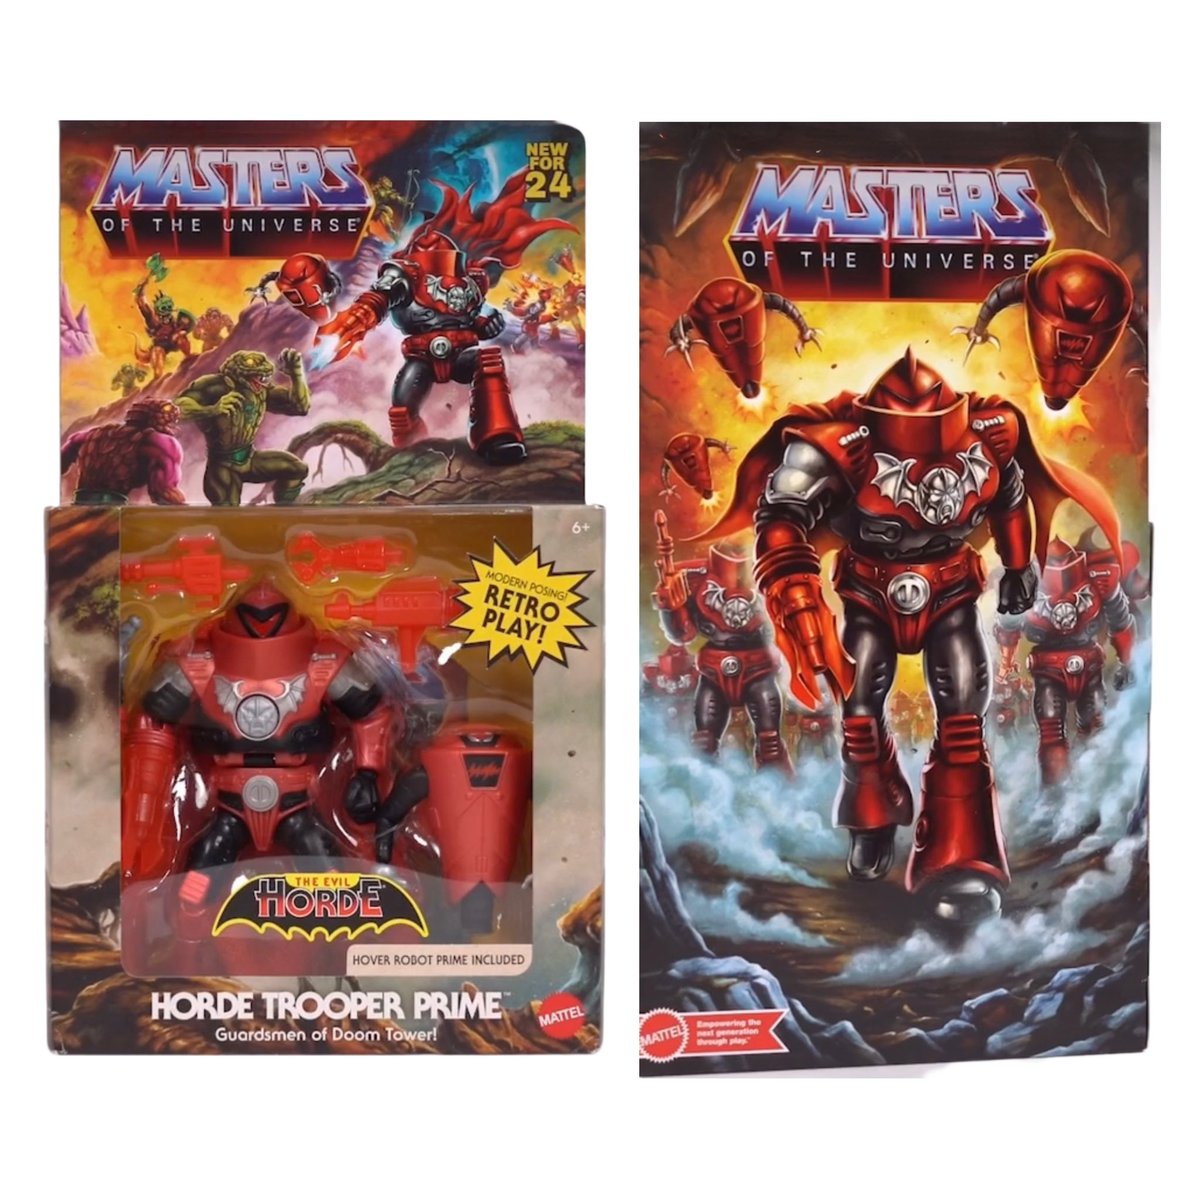 News | Roy Juarez von Mattel hat soeben Bilder von Horde Trooper Prime in Originalverpackung veröffentlicht. Wie gefällt dir die Figur in der Verpackung? #mastersoftheuniverse #motu #heman